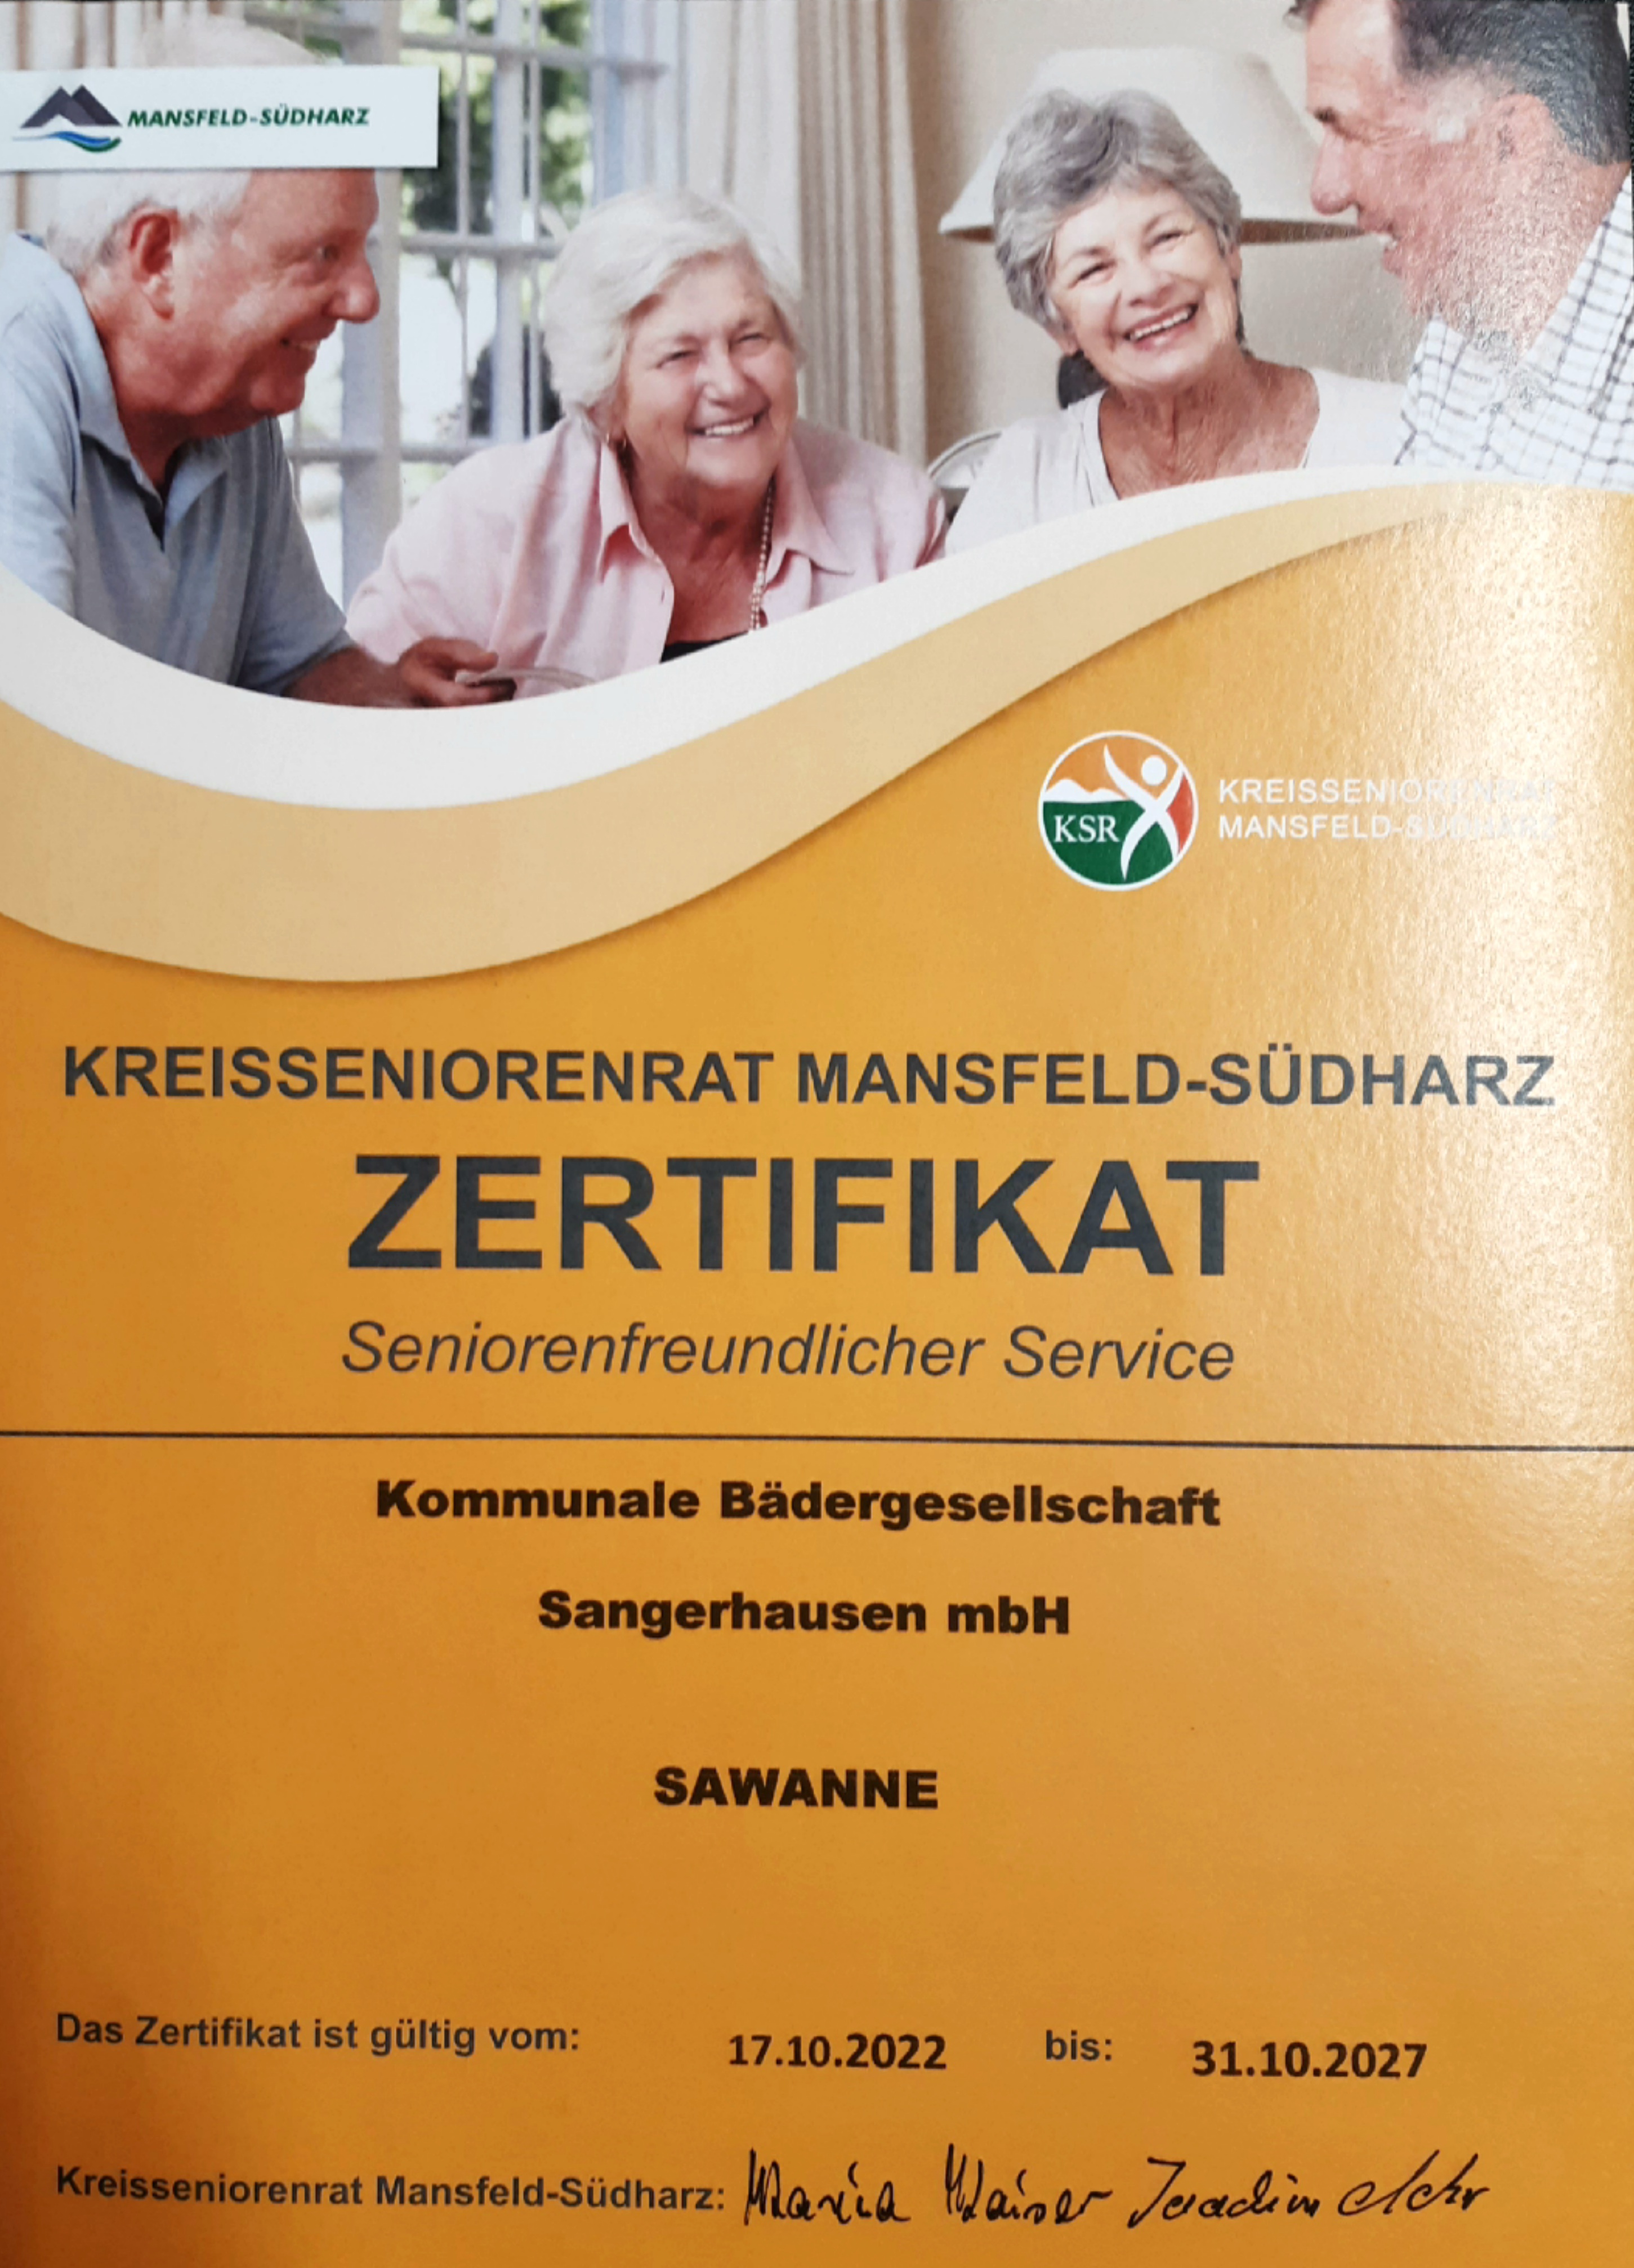 Hallenbad SaWanne weiterhin als "seniorenfreundlich" zertifiziert